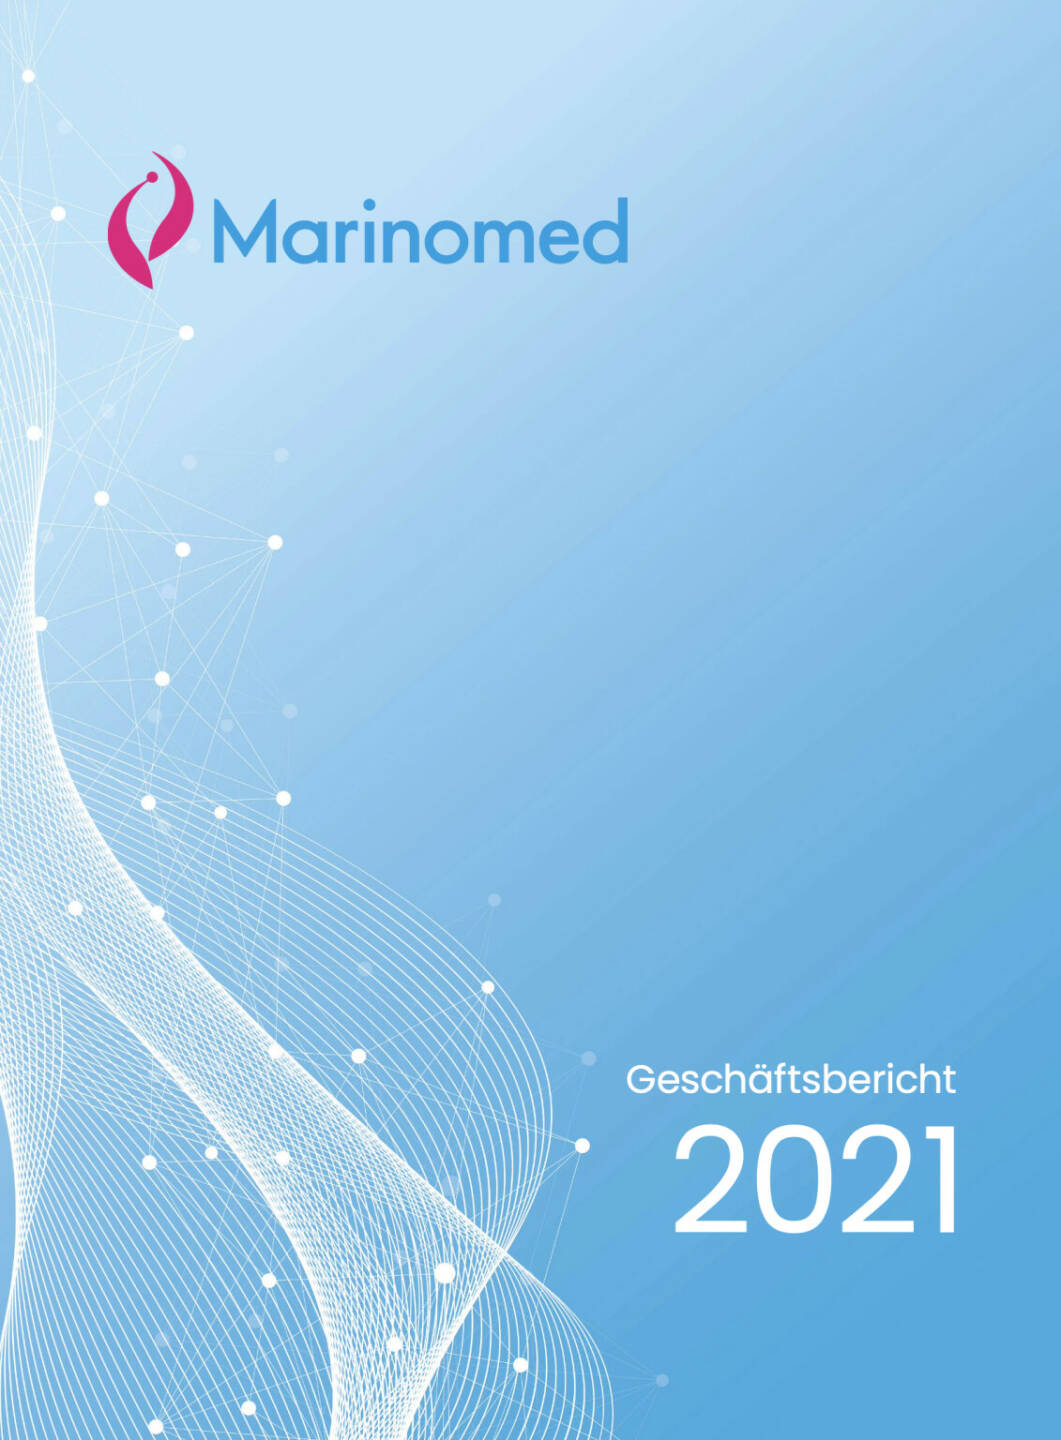 Marinomed Geschäftsbericht 2021 - https://boerse-social.com/companyreports/2022/214731/marinomed_geschaftsbericht_2021